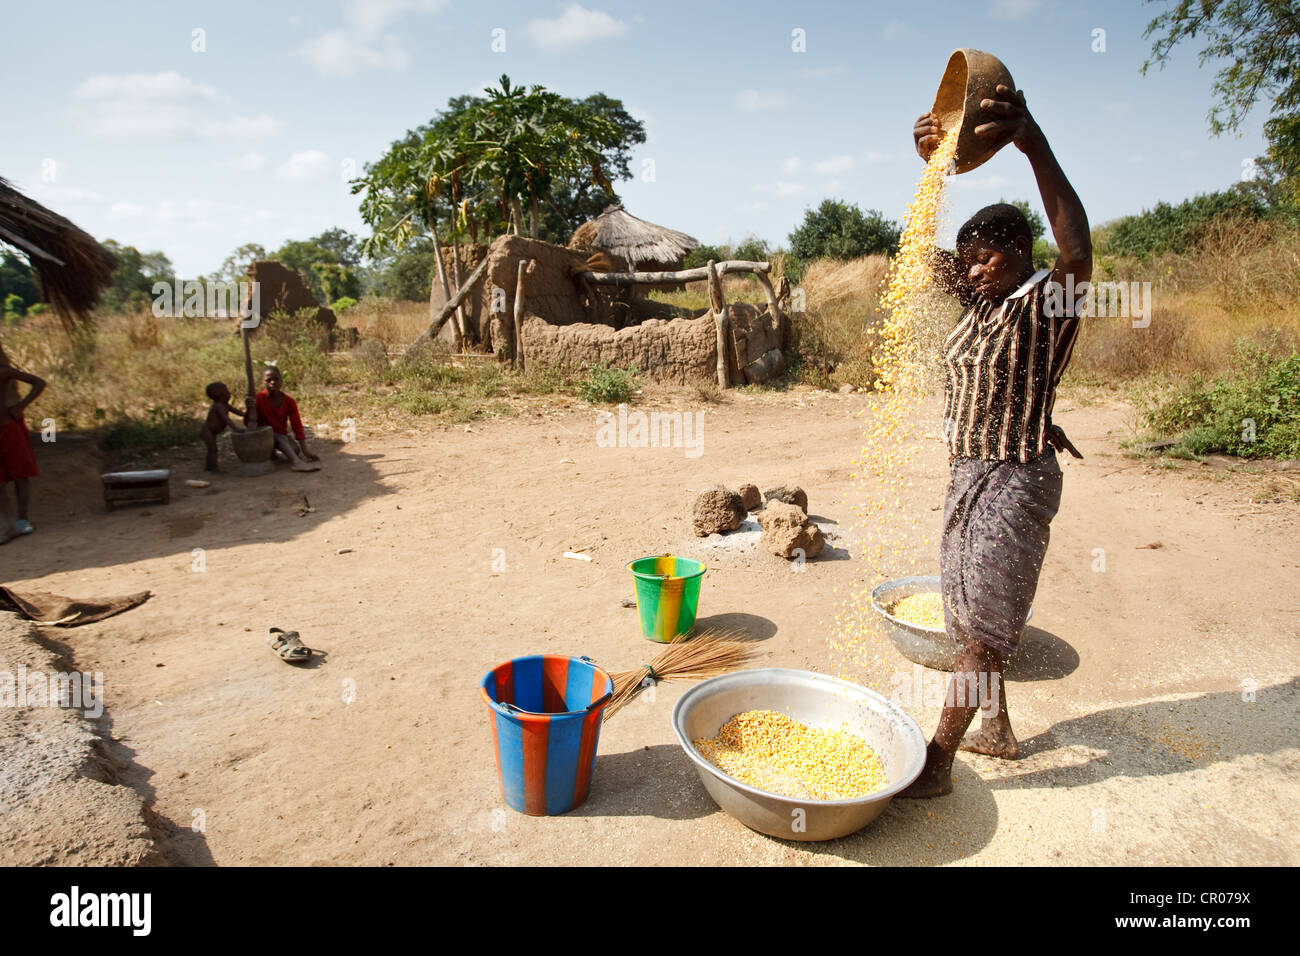 Una donna si riversa il granoturco secco da una altezza per separare la granella nel villaggio di Kirkpadouo, regione di Zanzan, Costa d'Avorio Foto Stock